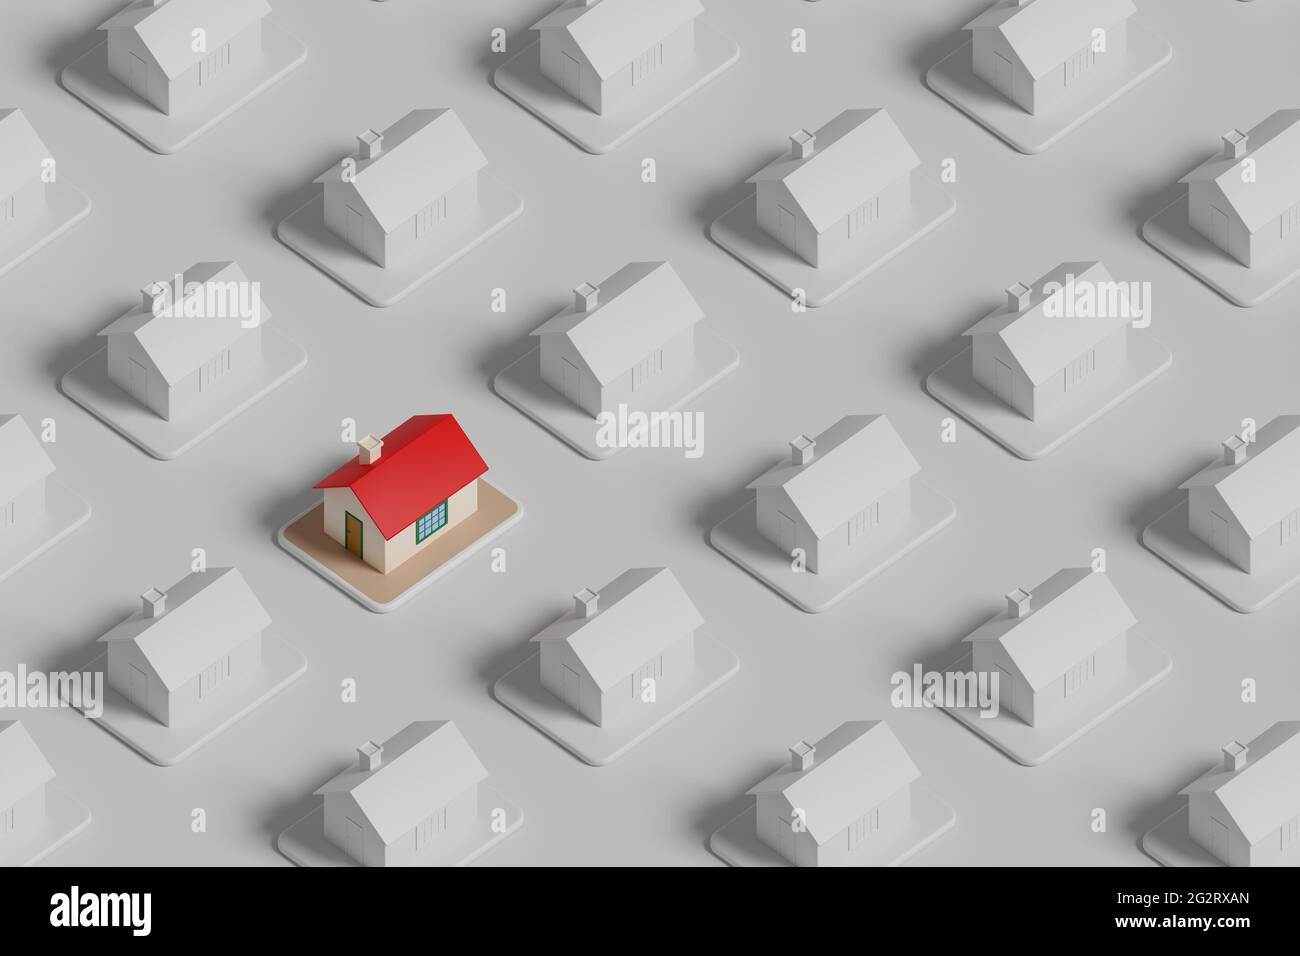 Vista isometrica di una casa colorata tra molte altre case bianche. Concetto di bene immobile. illustrazione 3d. Foto Stock